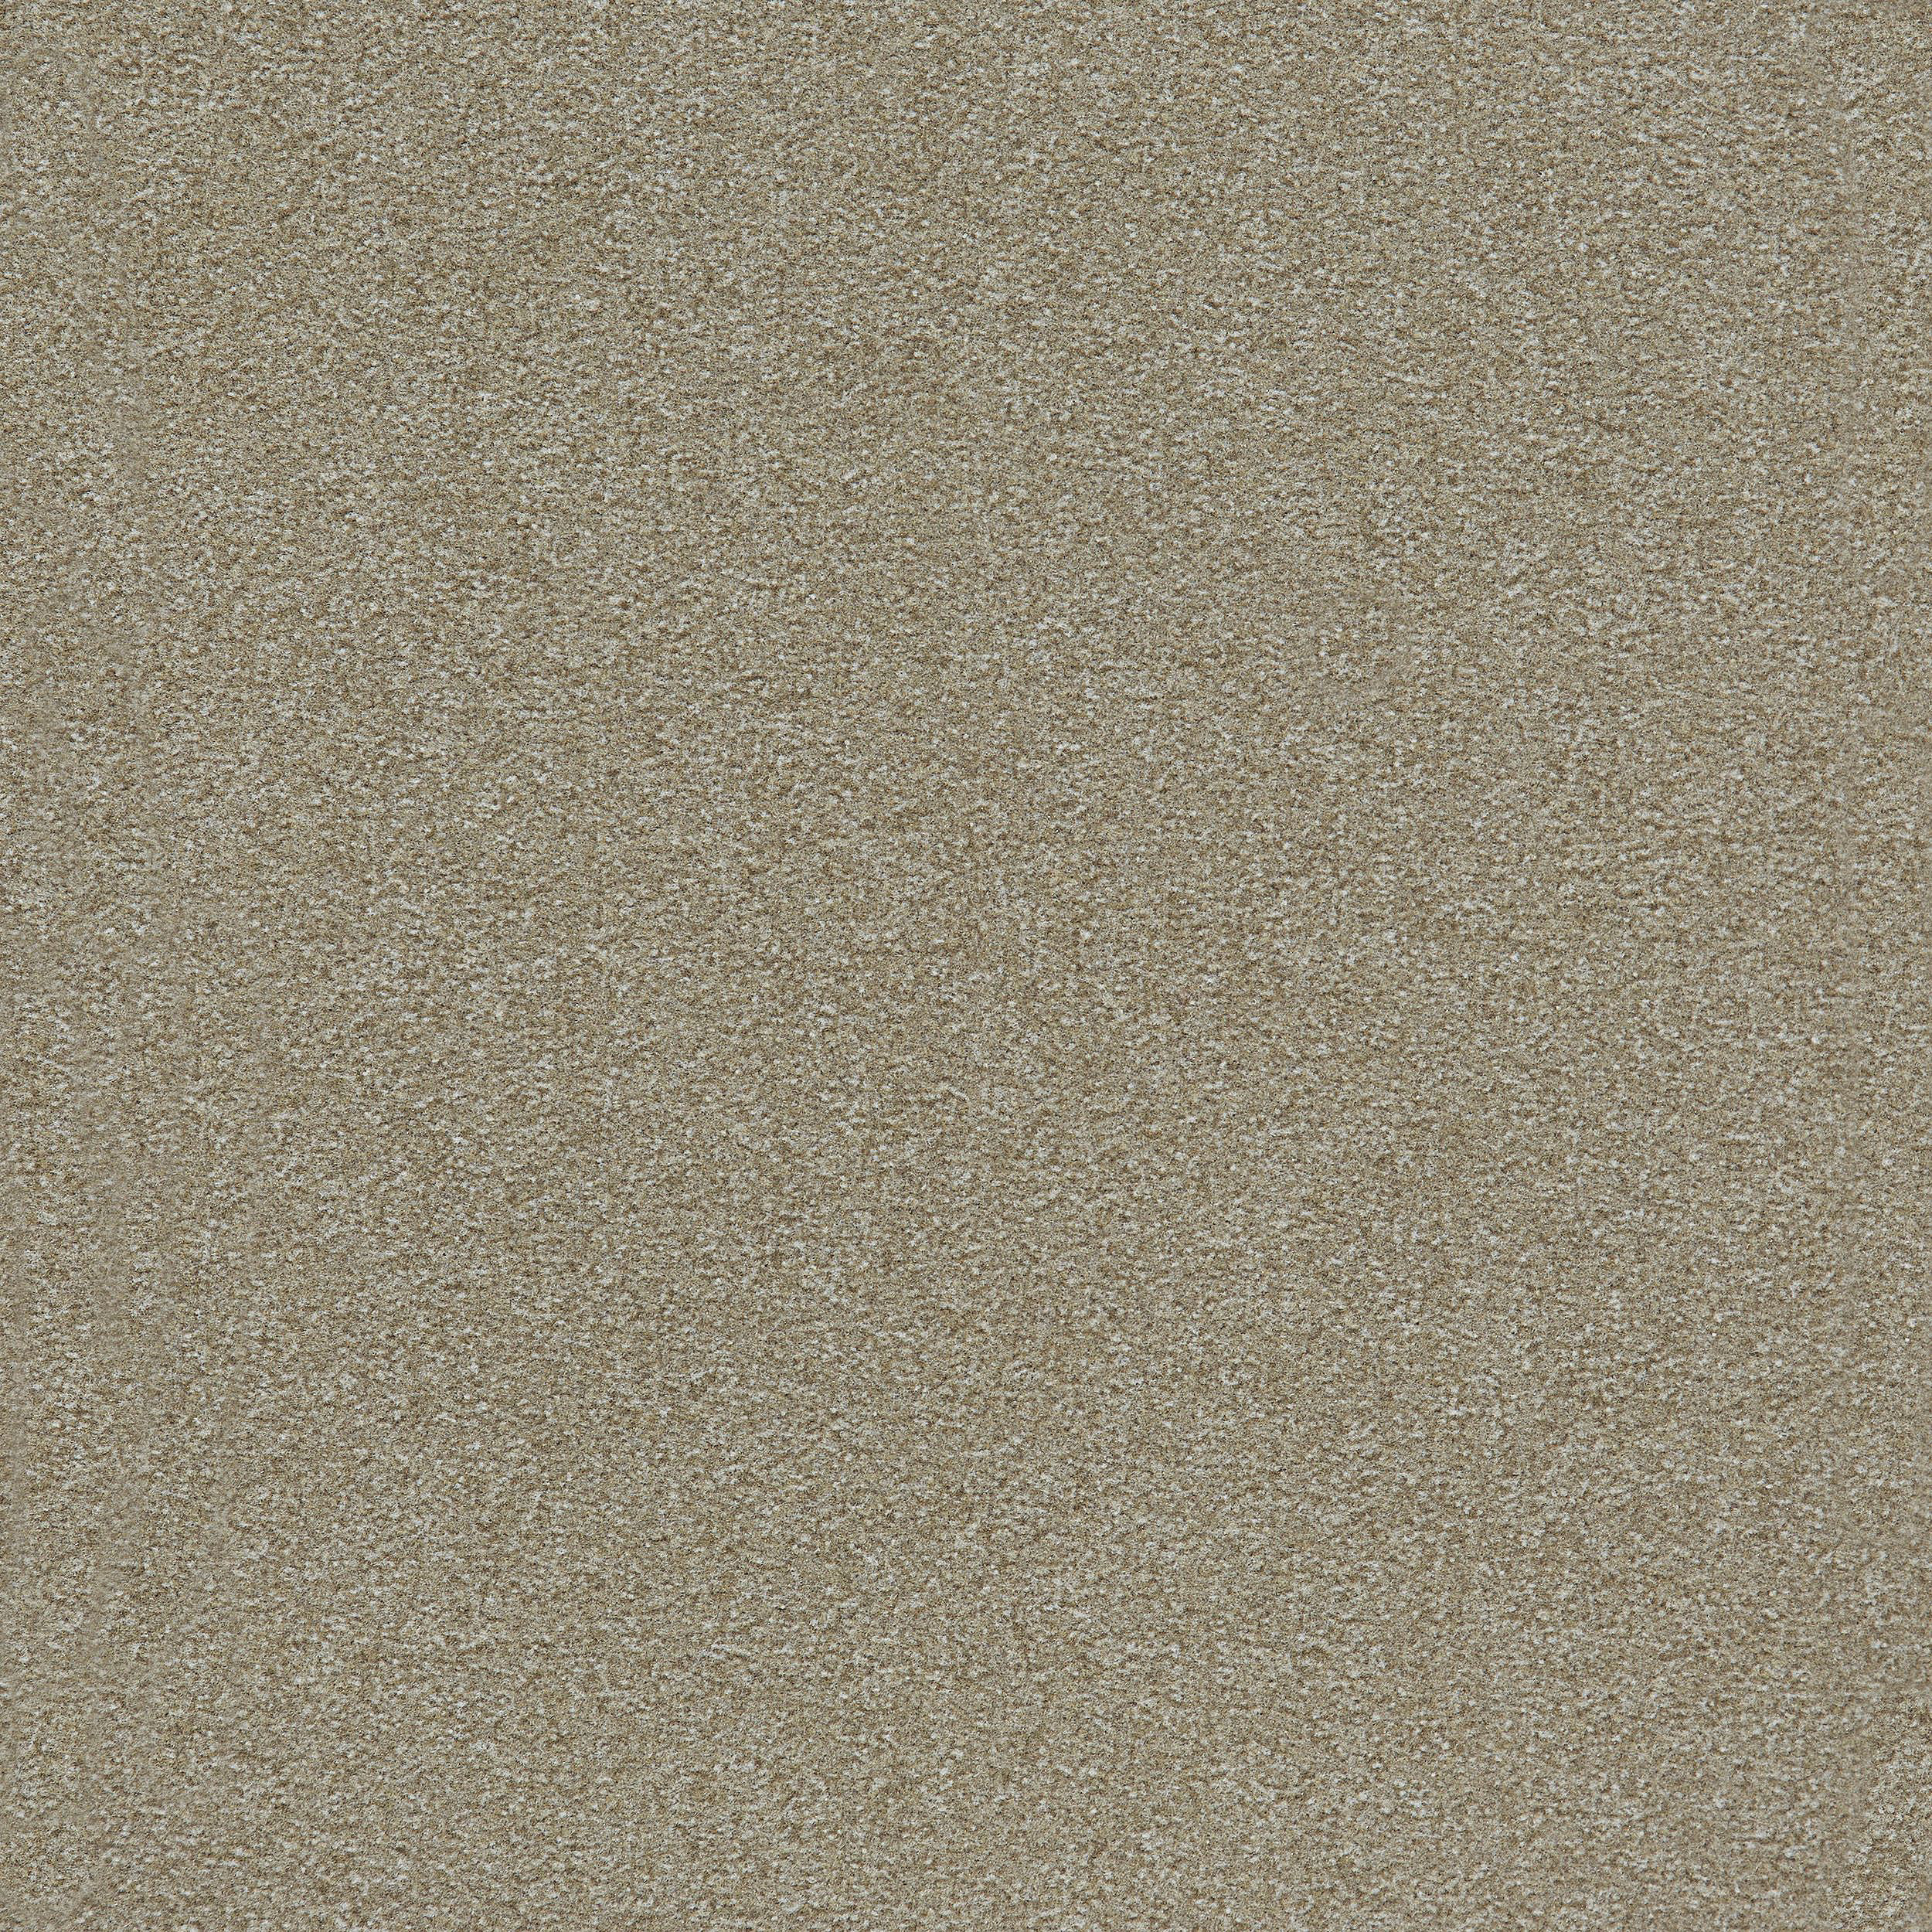 Heuga 725 Carpet Tile In Oyster Bildnummer 10